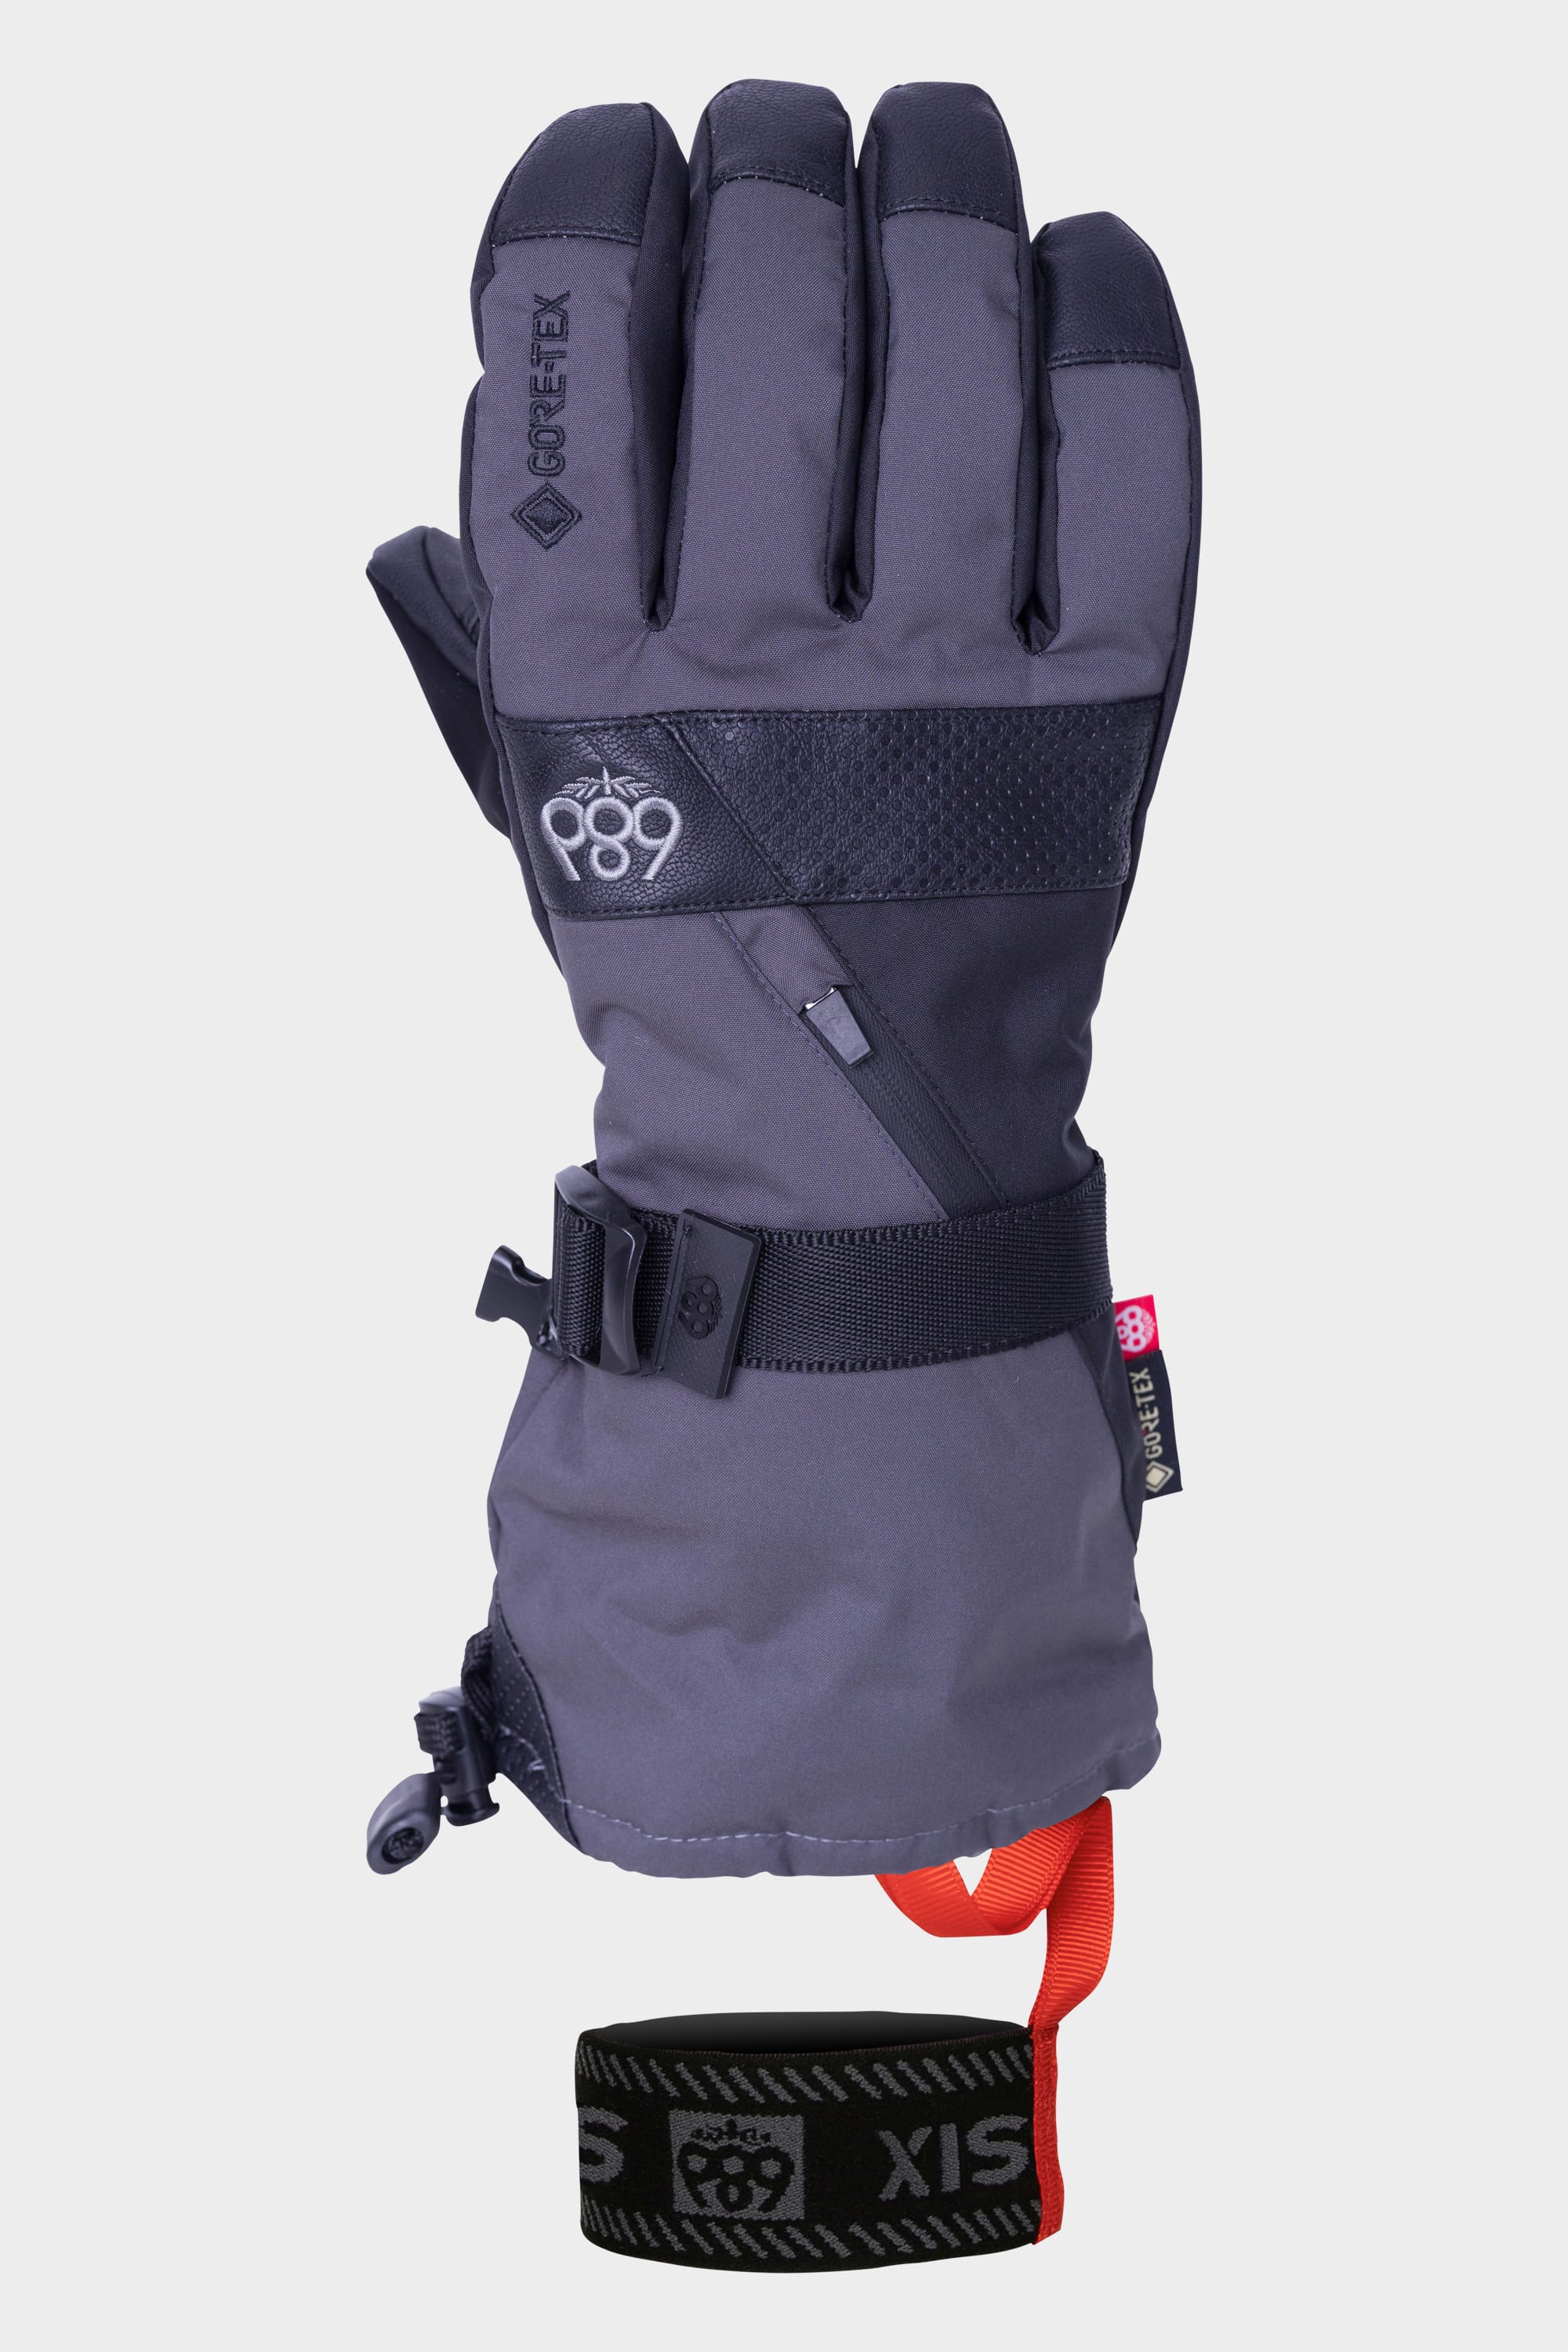 686 Men's GORE-TEX SMARTY 3-in-1 Gauntlet Glove – 686.com